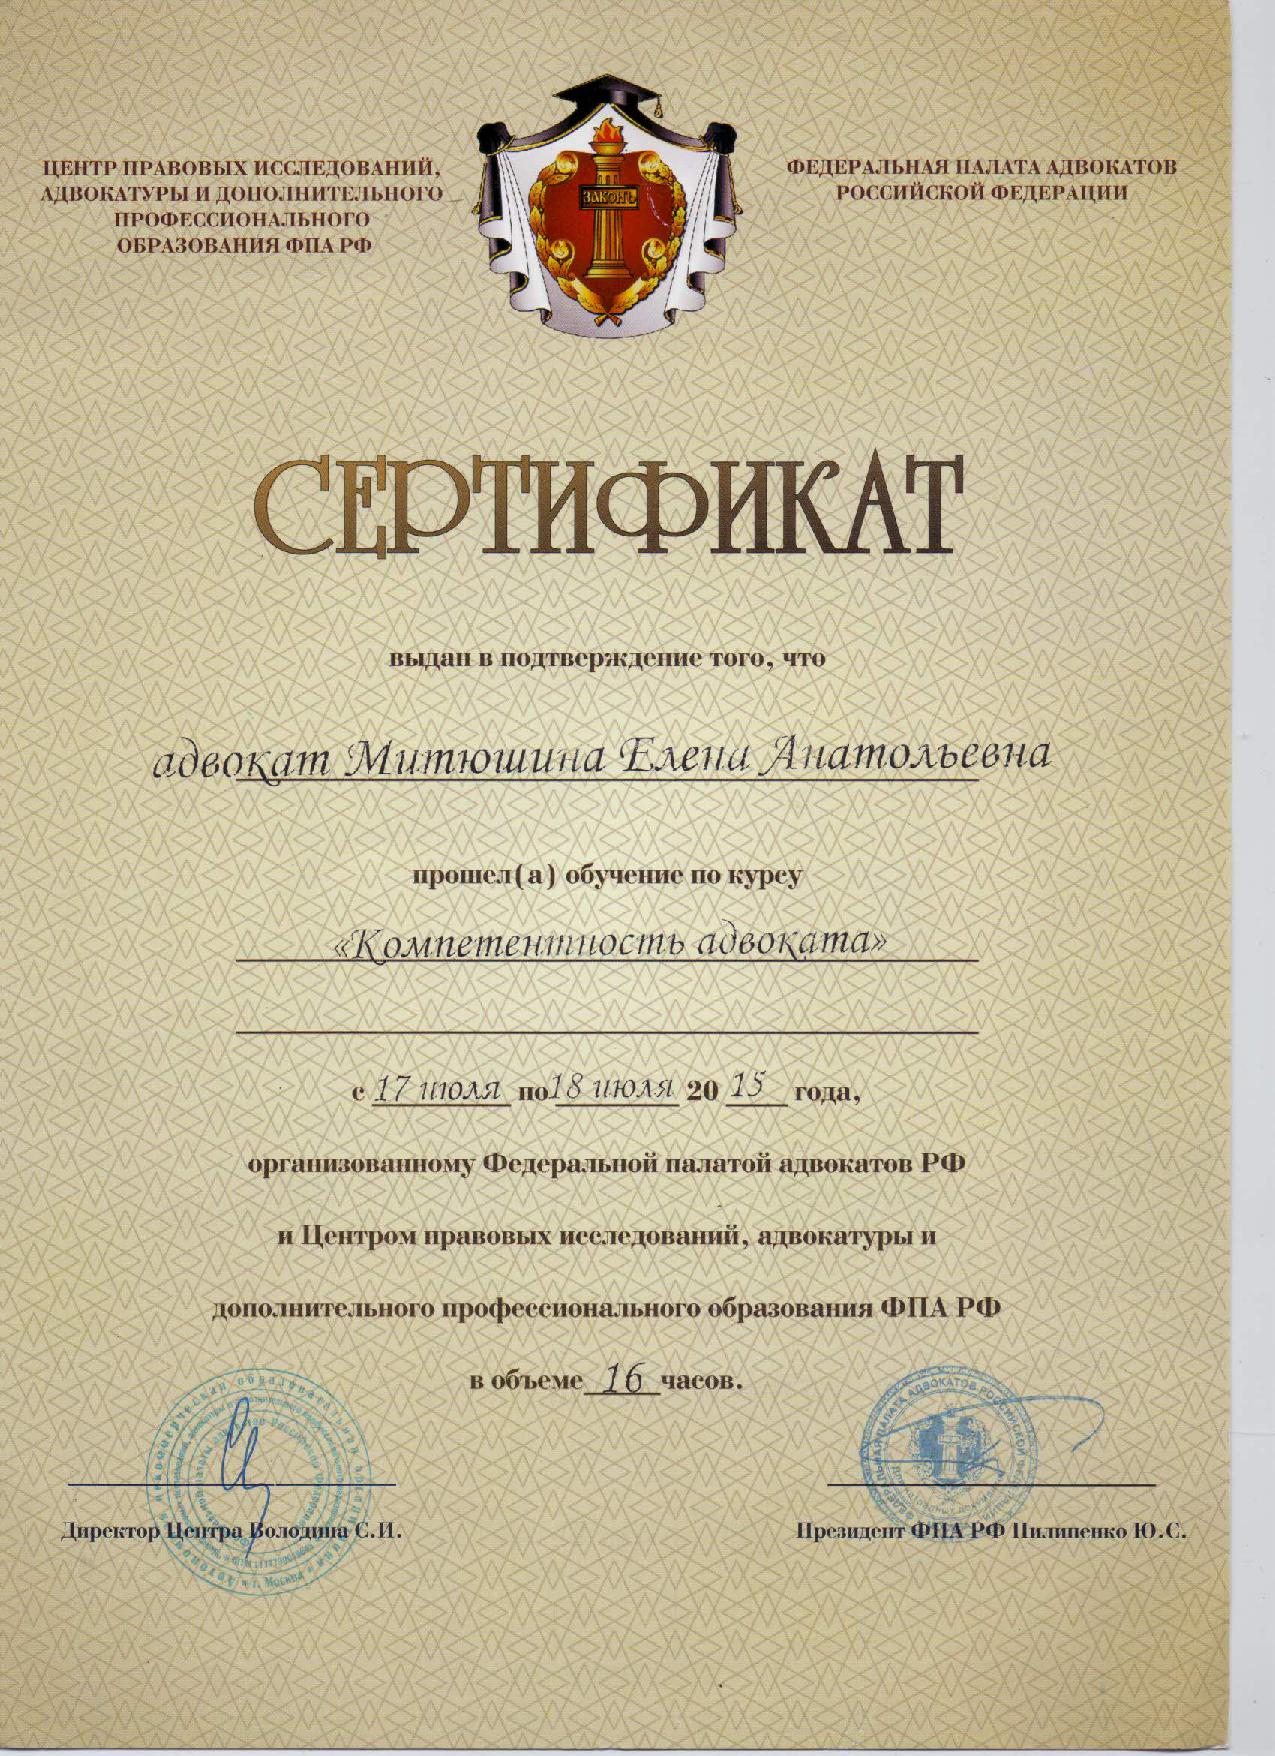 Сертификат "Компетентность адвоката"